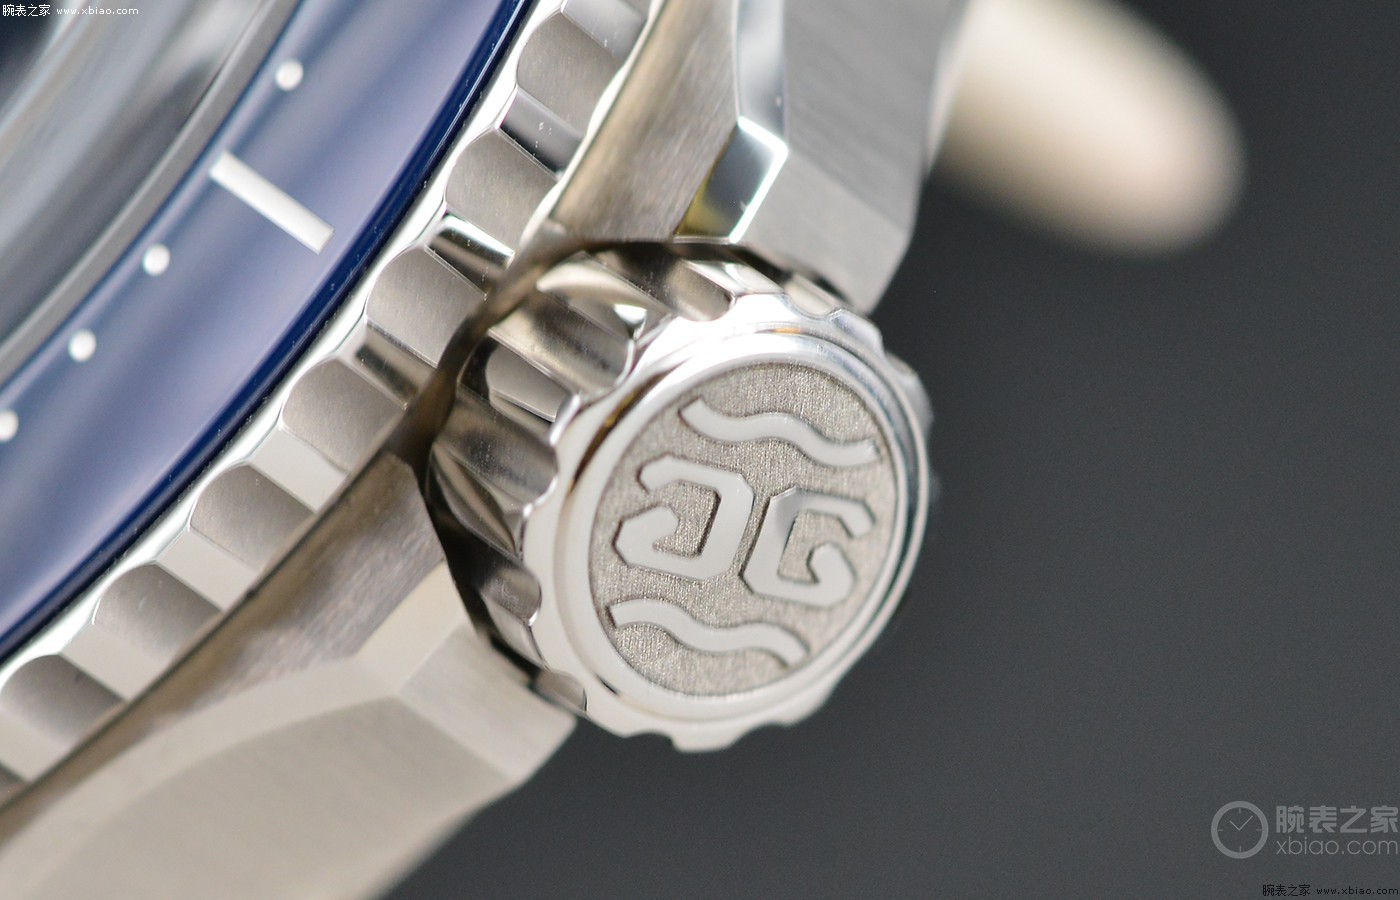 专业与实用的完美结合 品鉴格拉苏蒂原创大日历SeaQ腕表